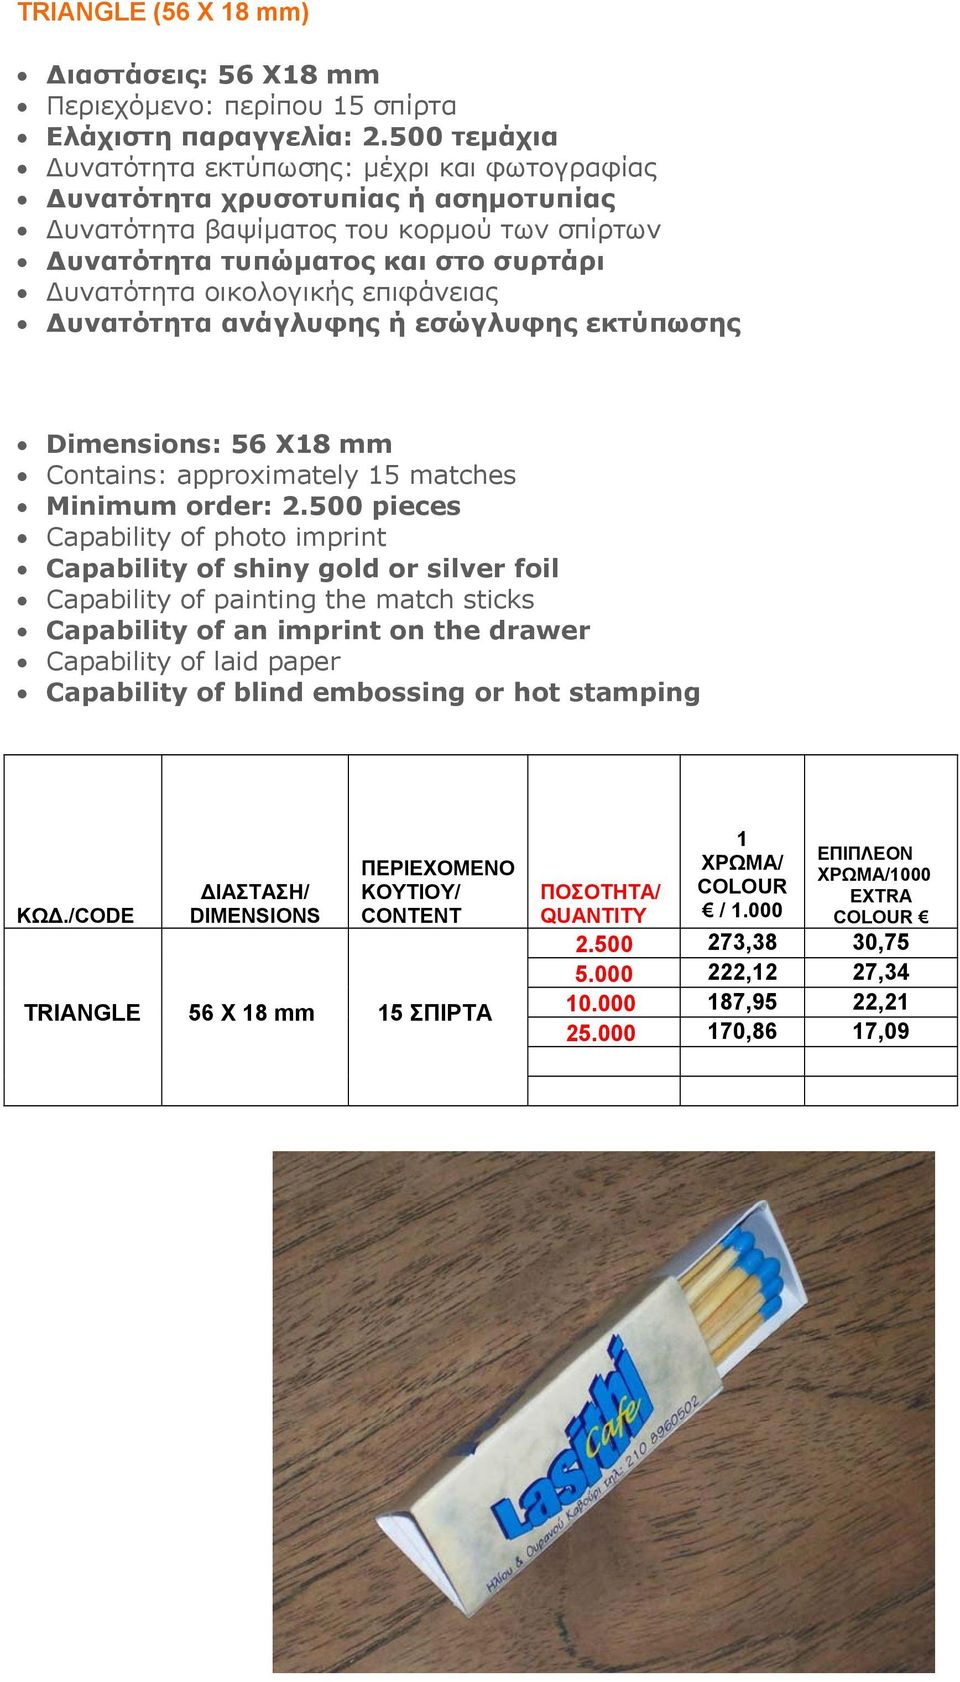 500 τεμάχια Dimensions: 56 X8 mm Contains: approximately 5 matches